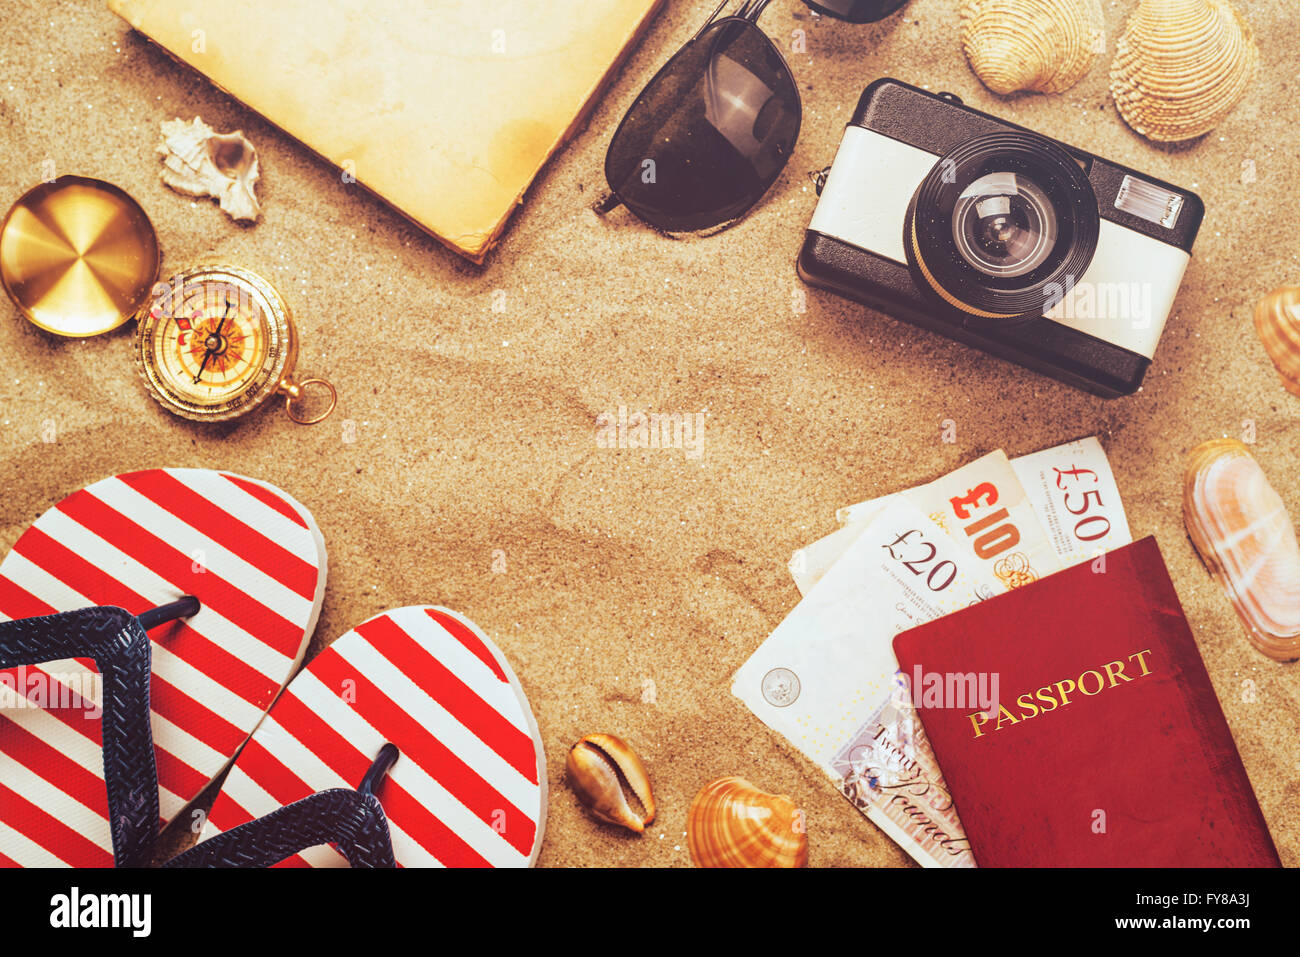 Sommer Urlaub Zubehör am tropischen Sandstrand Ocean Beach, Urlaub im Ausland - Sommer-Lifestyle-Objekten Stockfoto